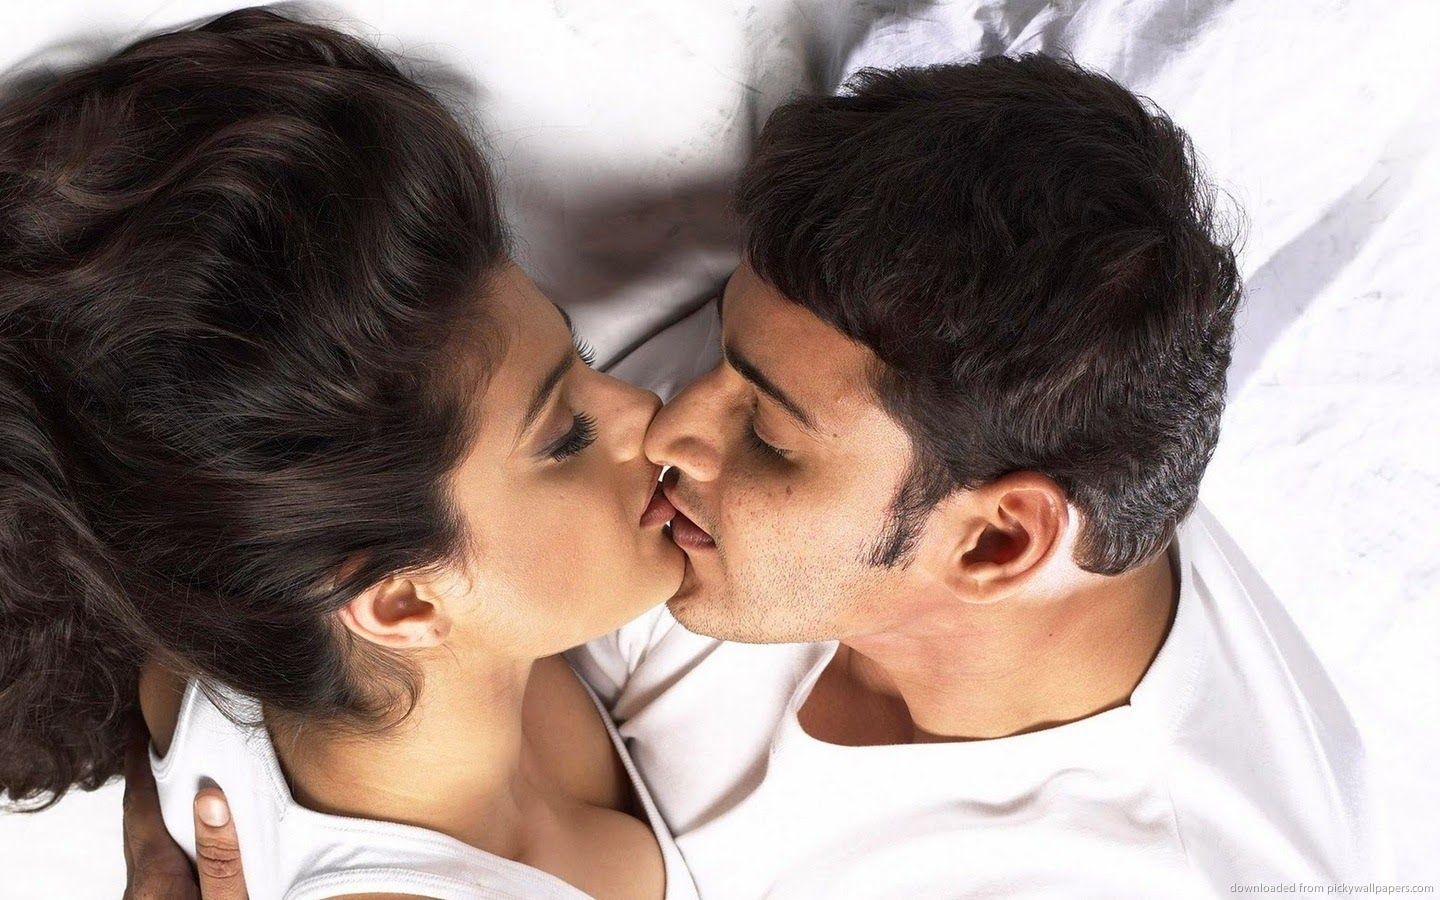 Biting kisses. Красивый поцелуй. Поцелуй в губы. Индийский поцелуй. Красивый поцелуй в губы.